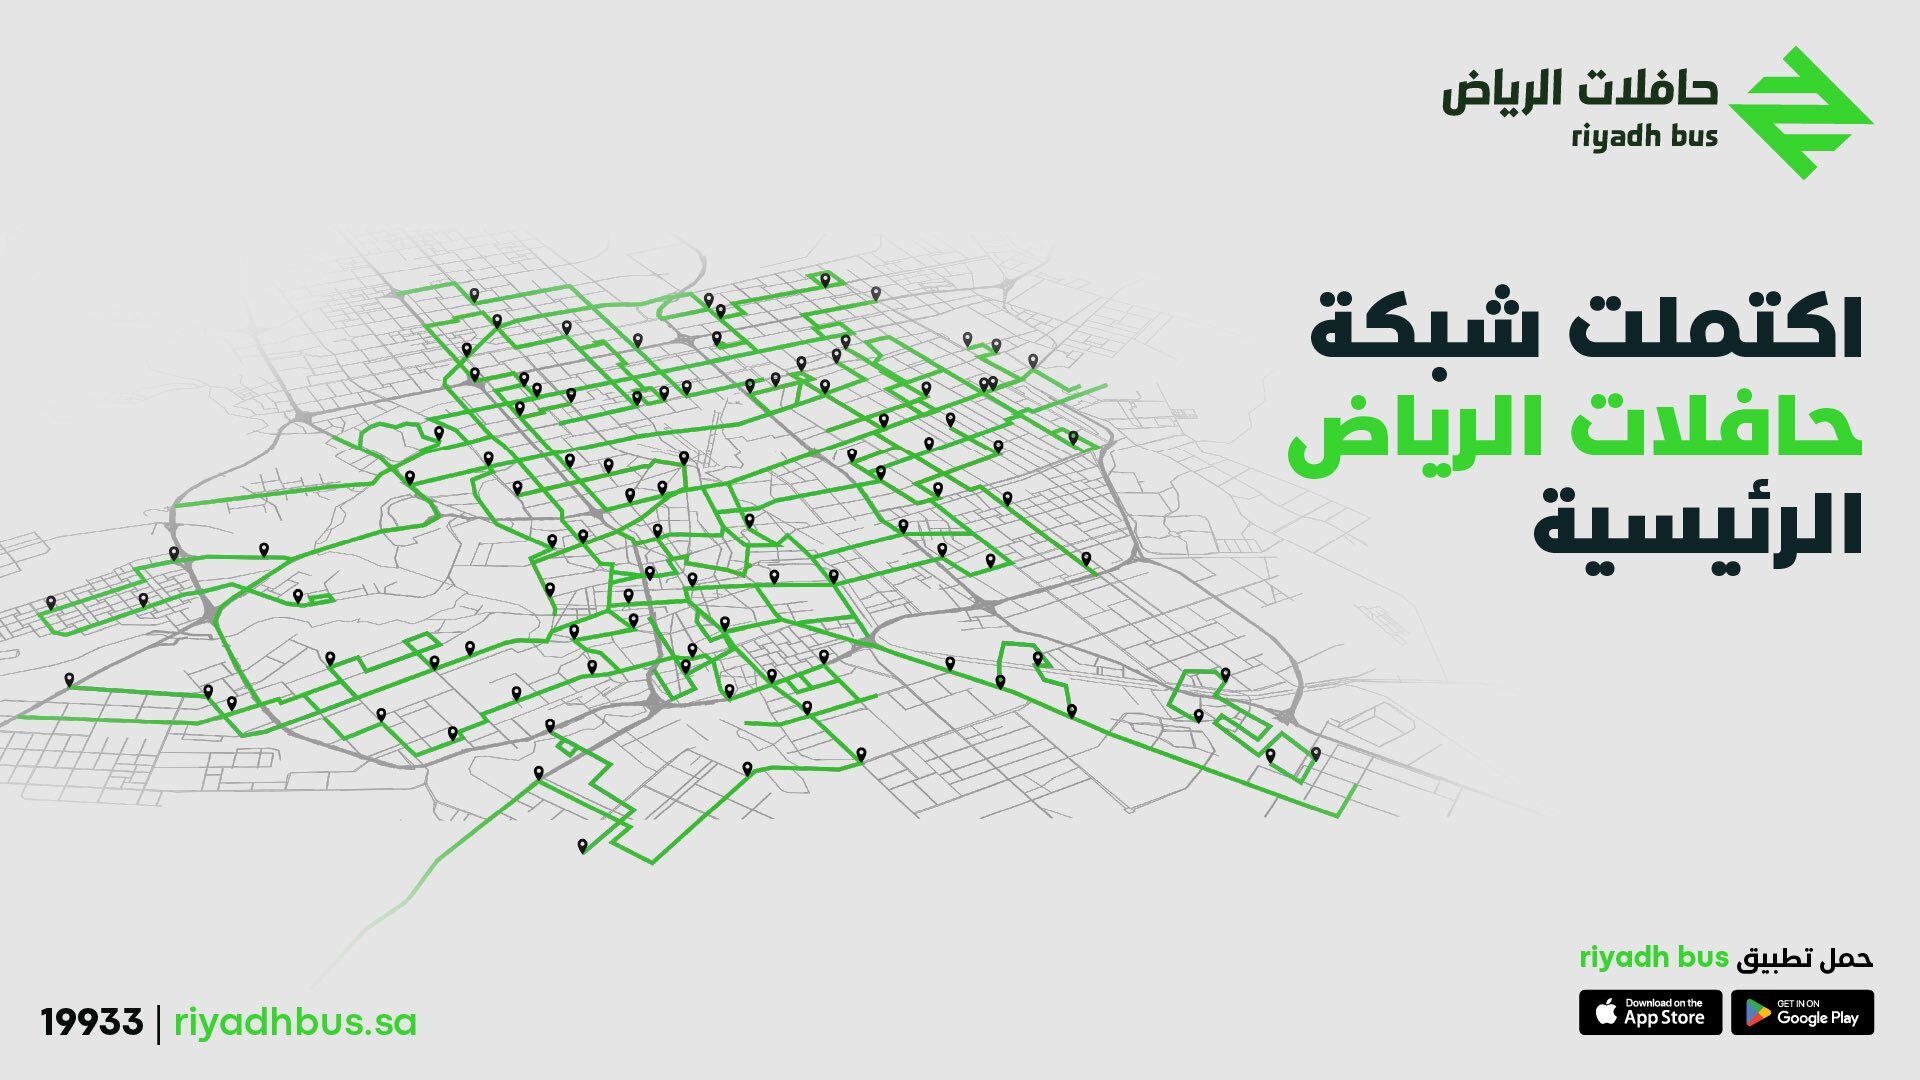 "الهيئة الملكية" تعلن اكتمال شبكة حافلات الرياض 2